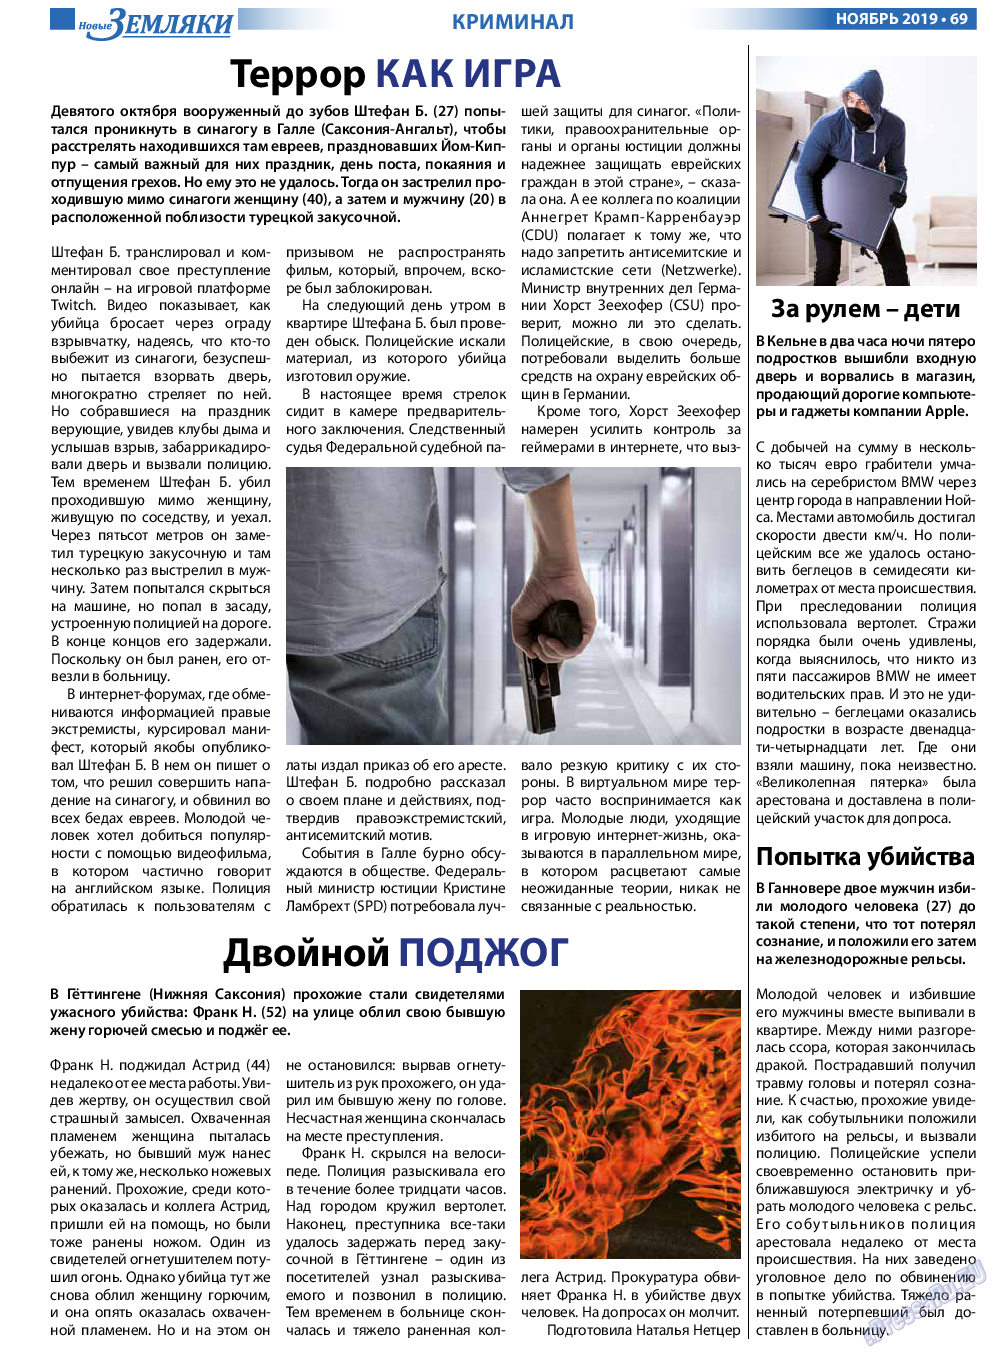 Новые Земляки, газета. 2019 №11 стр.69